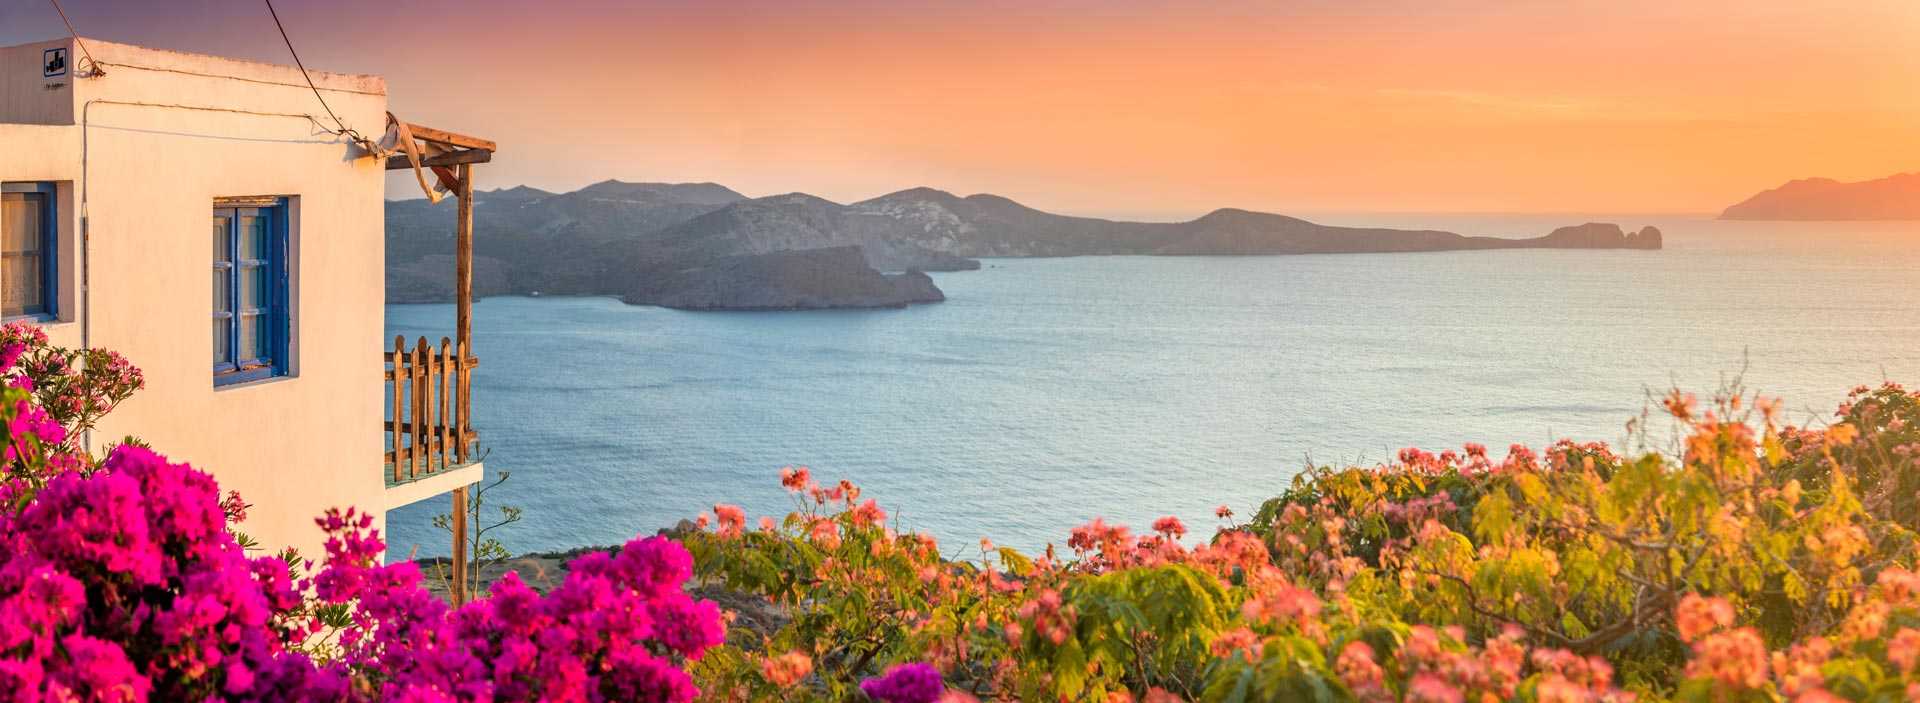 Maison et bougainvillier devant un coucher de soleil sur la baie des Cyclades, en Grèce